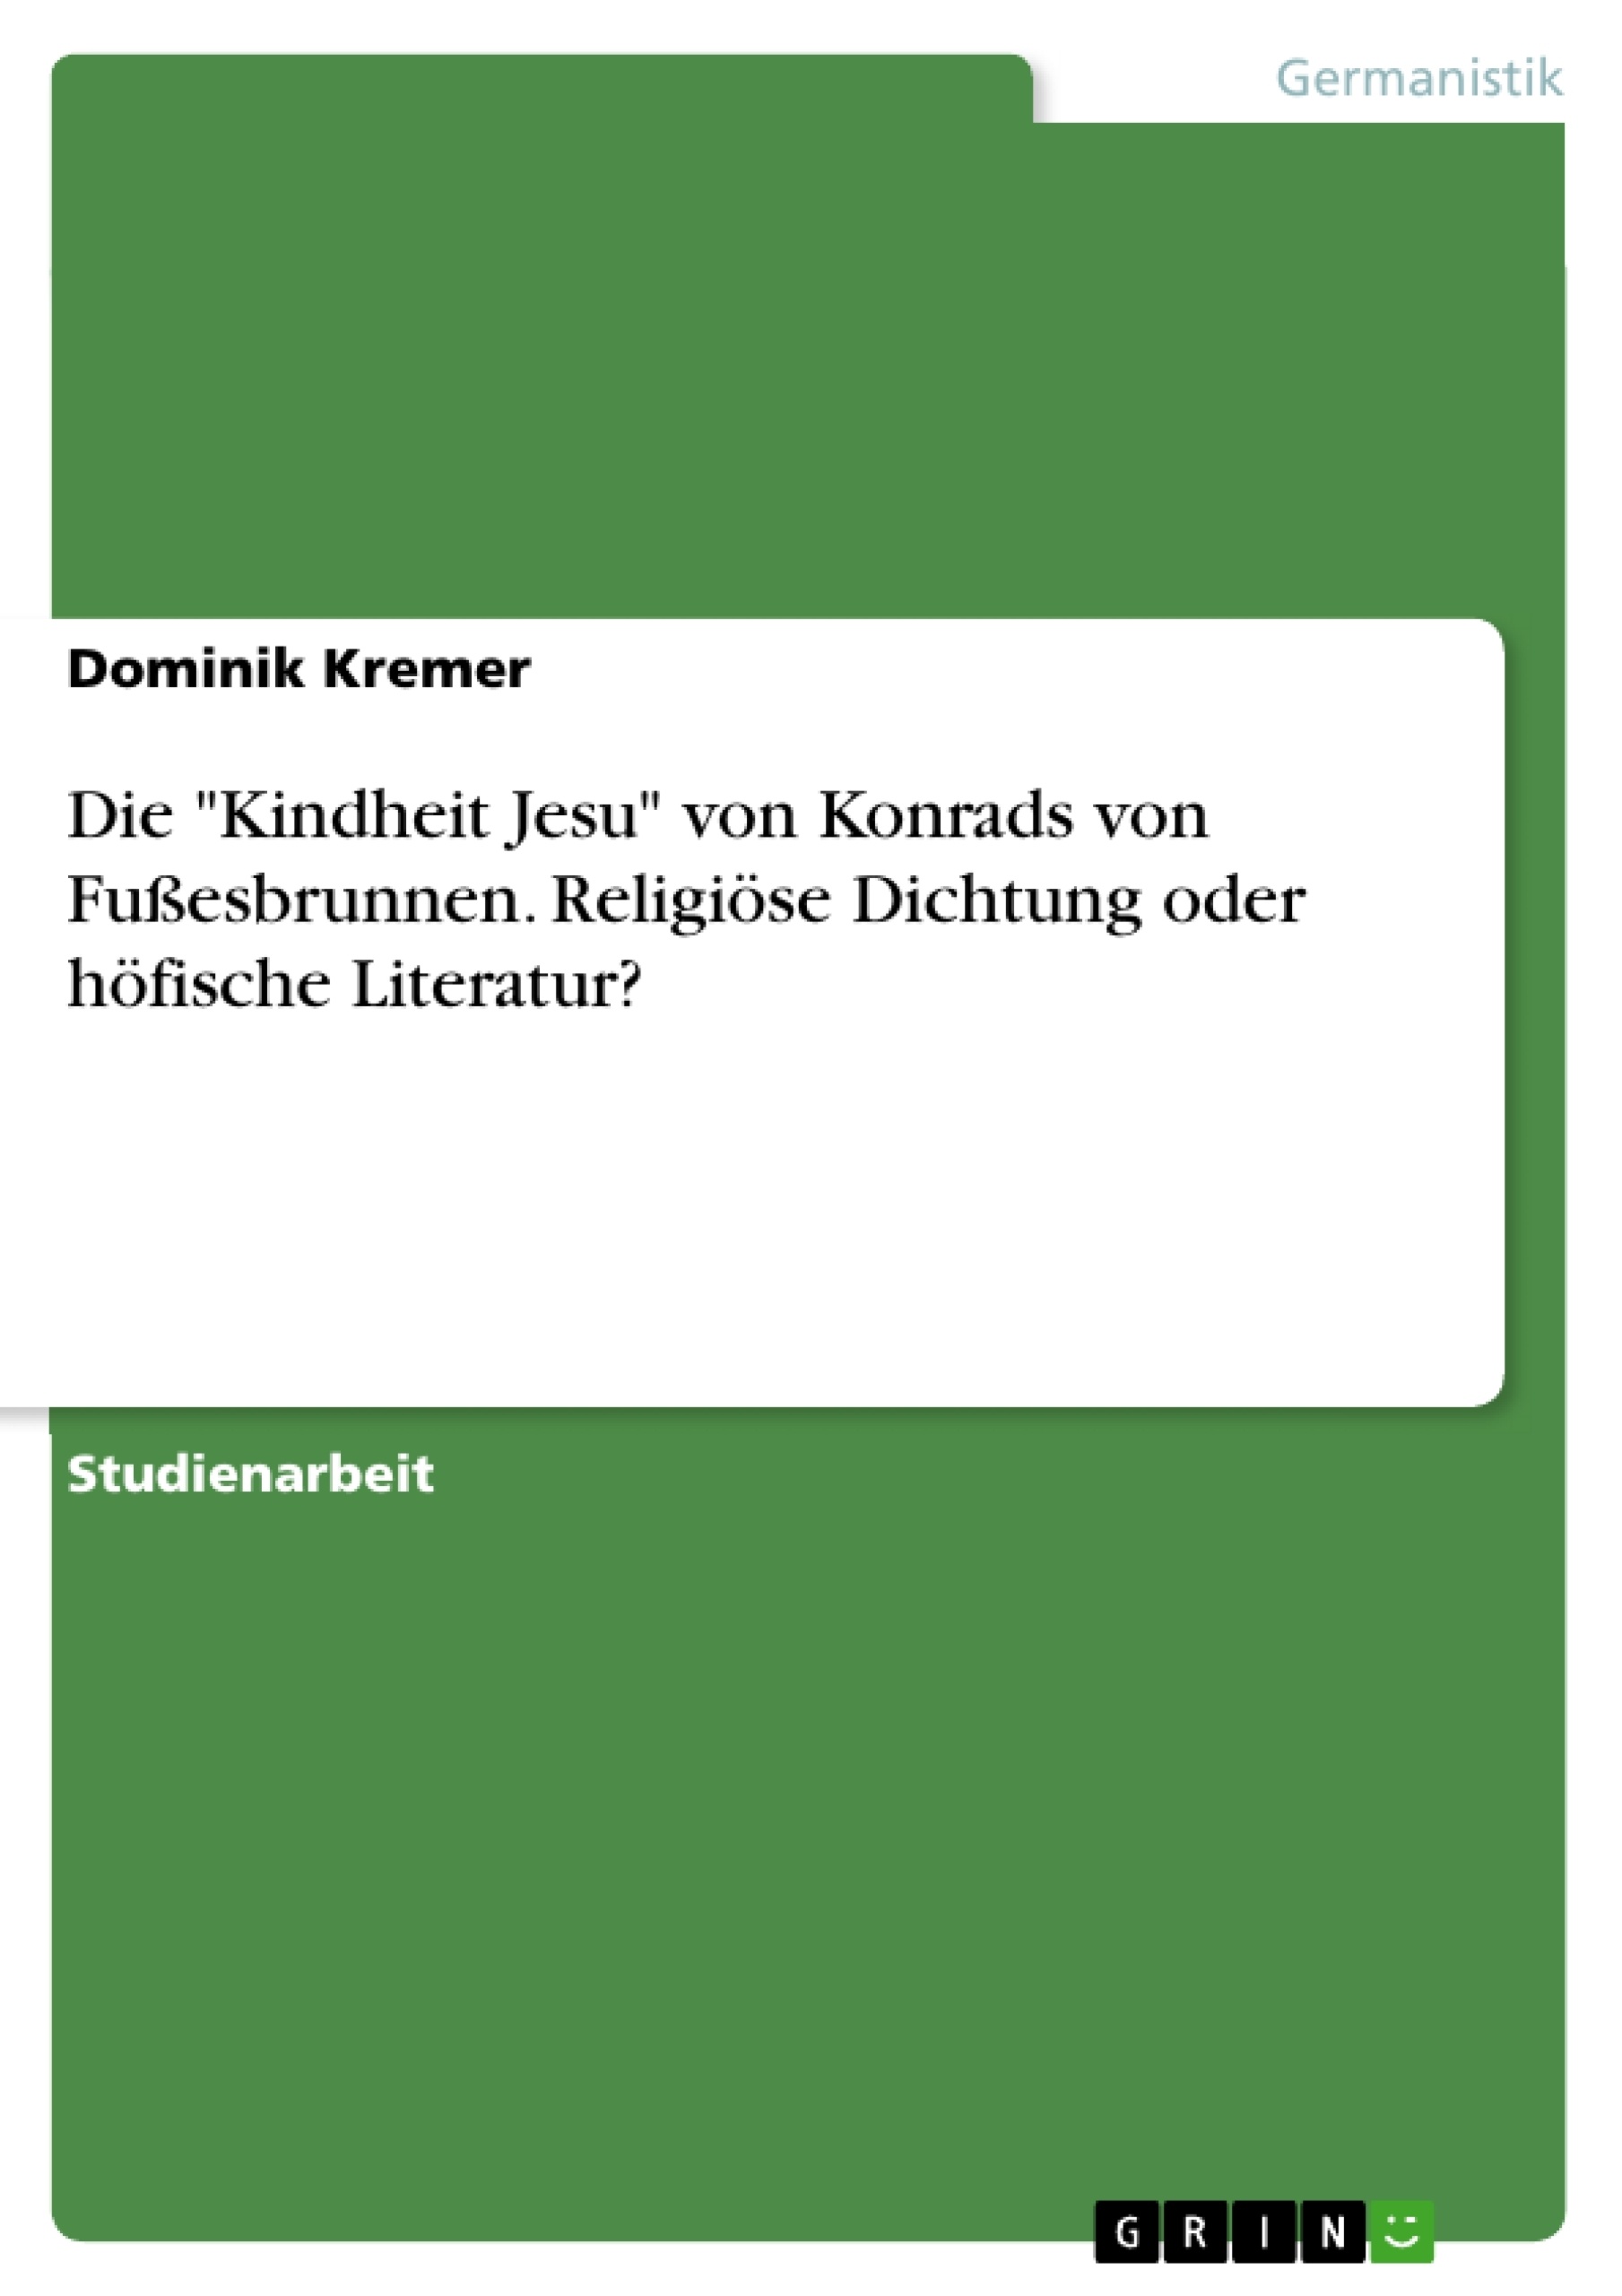 Titre: Die "Kindheit Jesu" von Konrads von Fußesbrunnen. Religiöse Dichtung oder höfische Literatur?